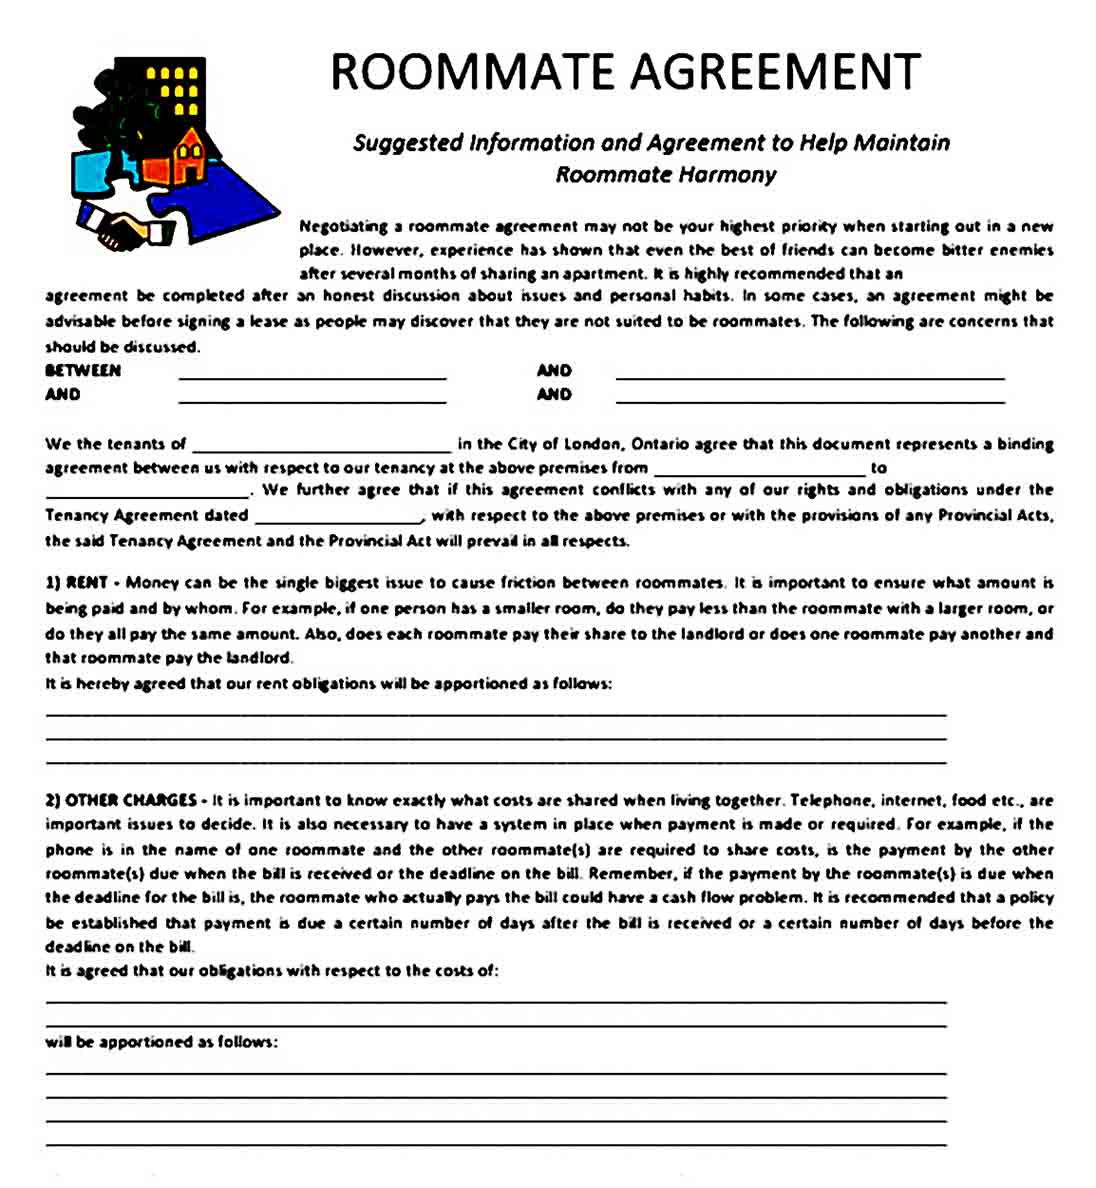 Roommate Agreement 001